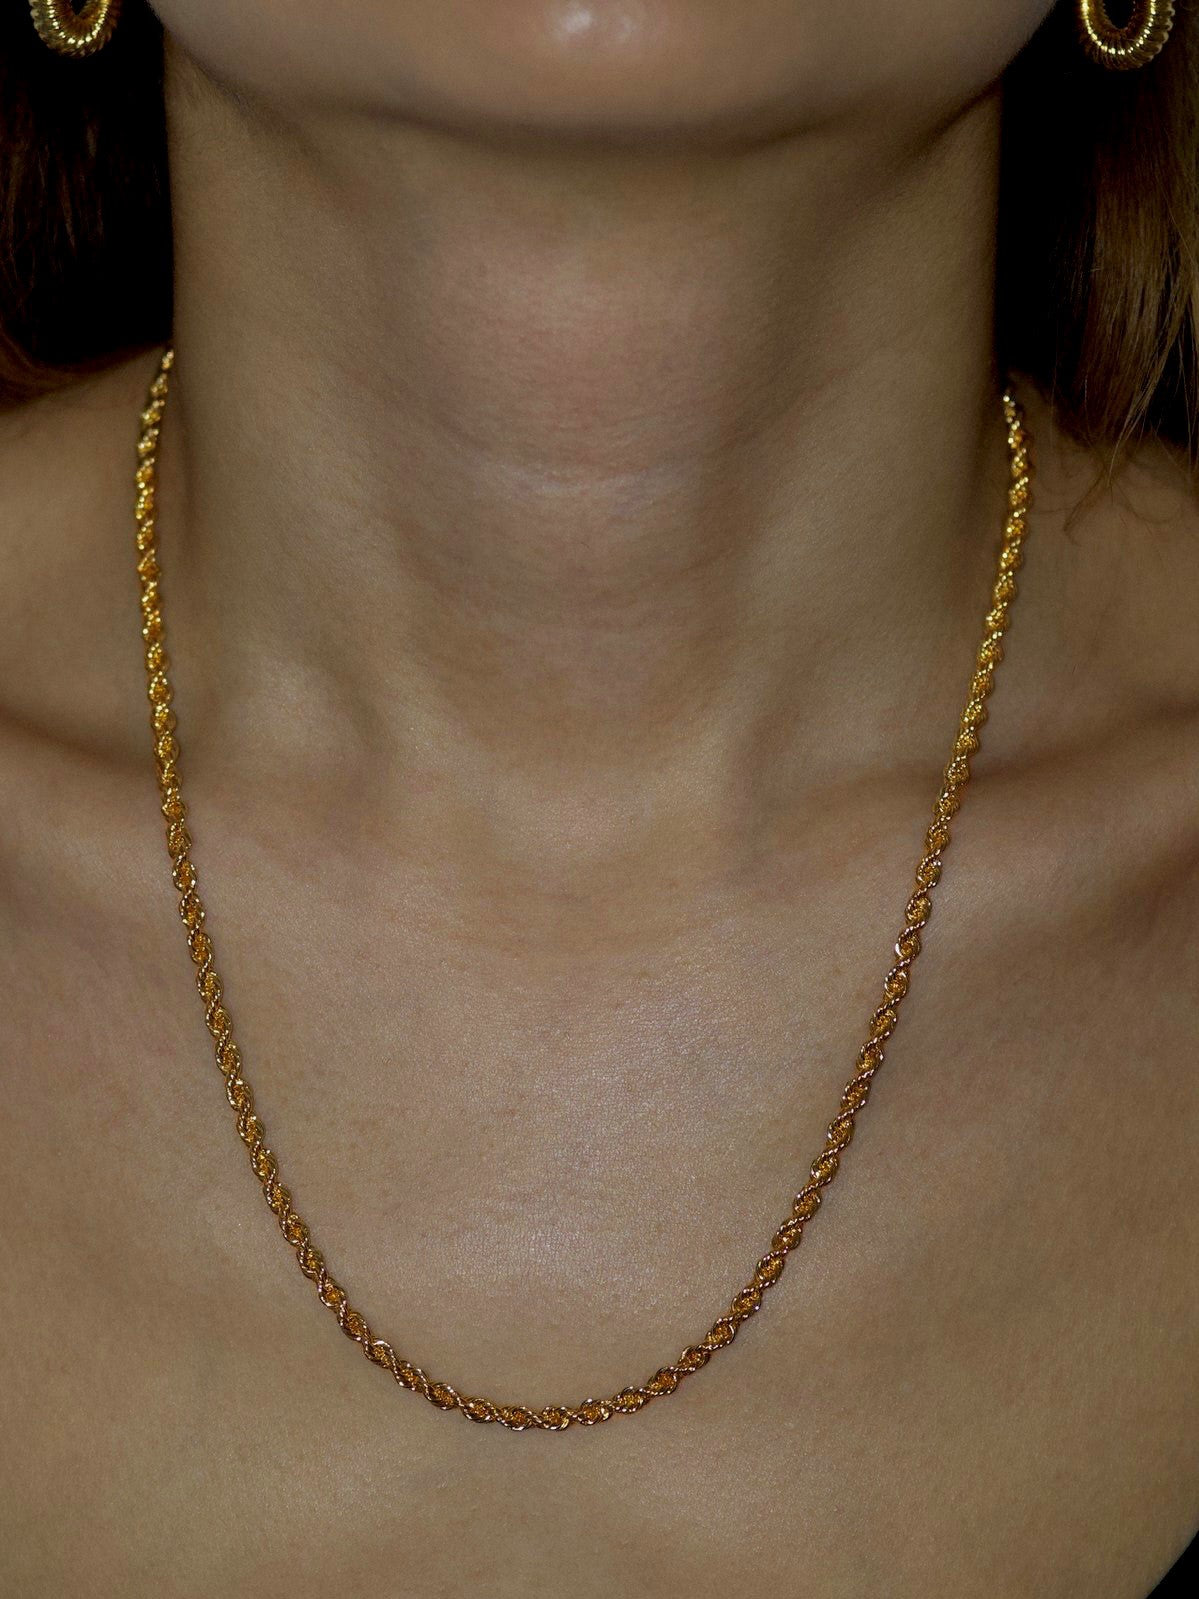 Model wearing 18k gold filled necklace